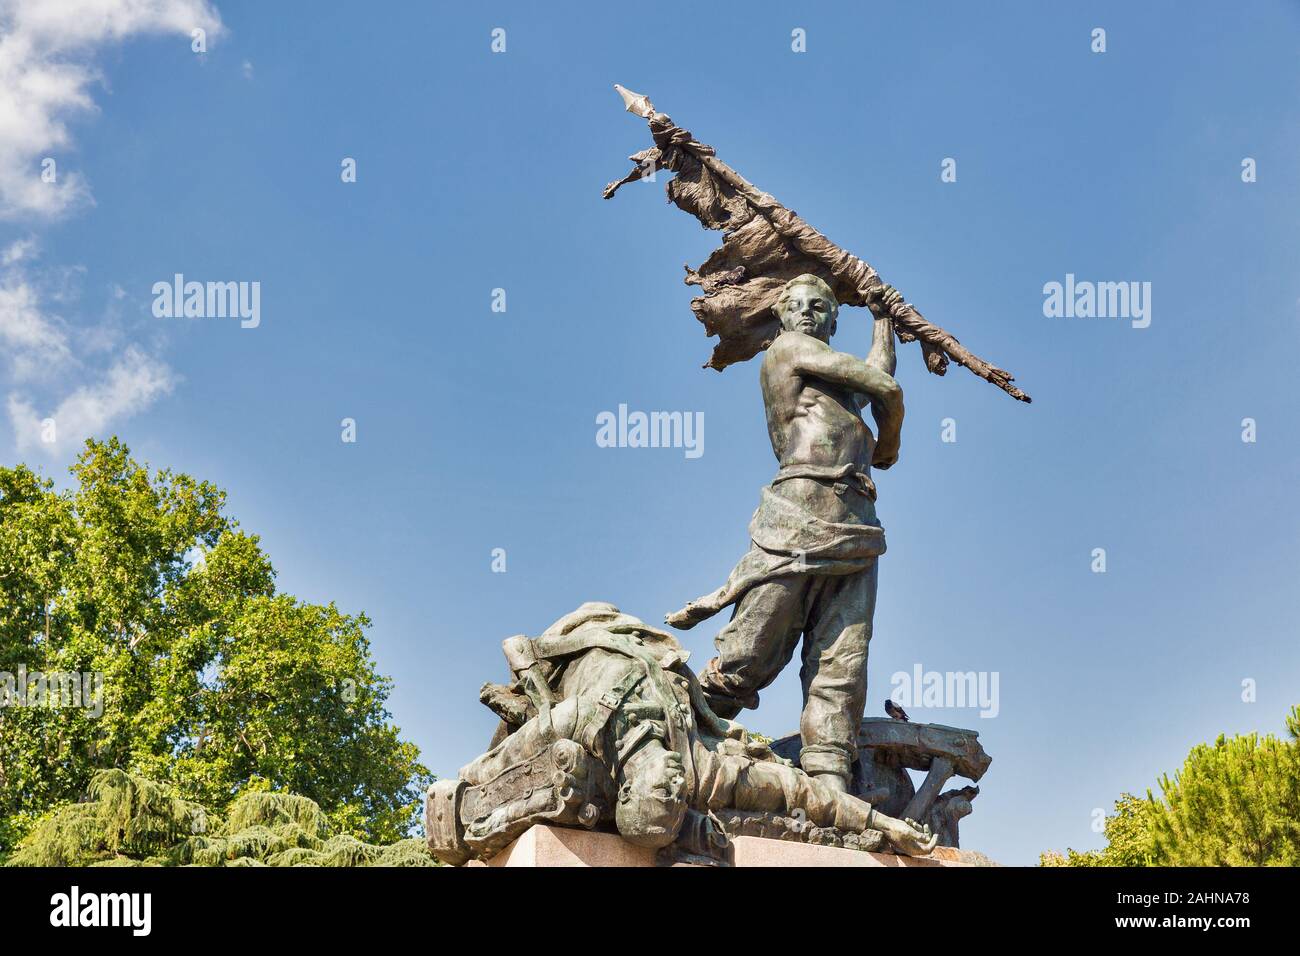 Monument aux morts le 8 août 1848 dans la guerre contre l'Autriche. Bologne, Italie. Banque D'Images